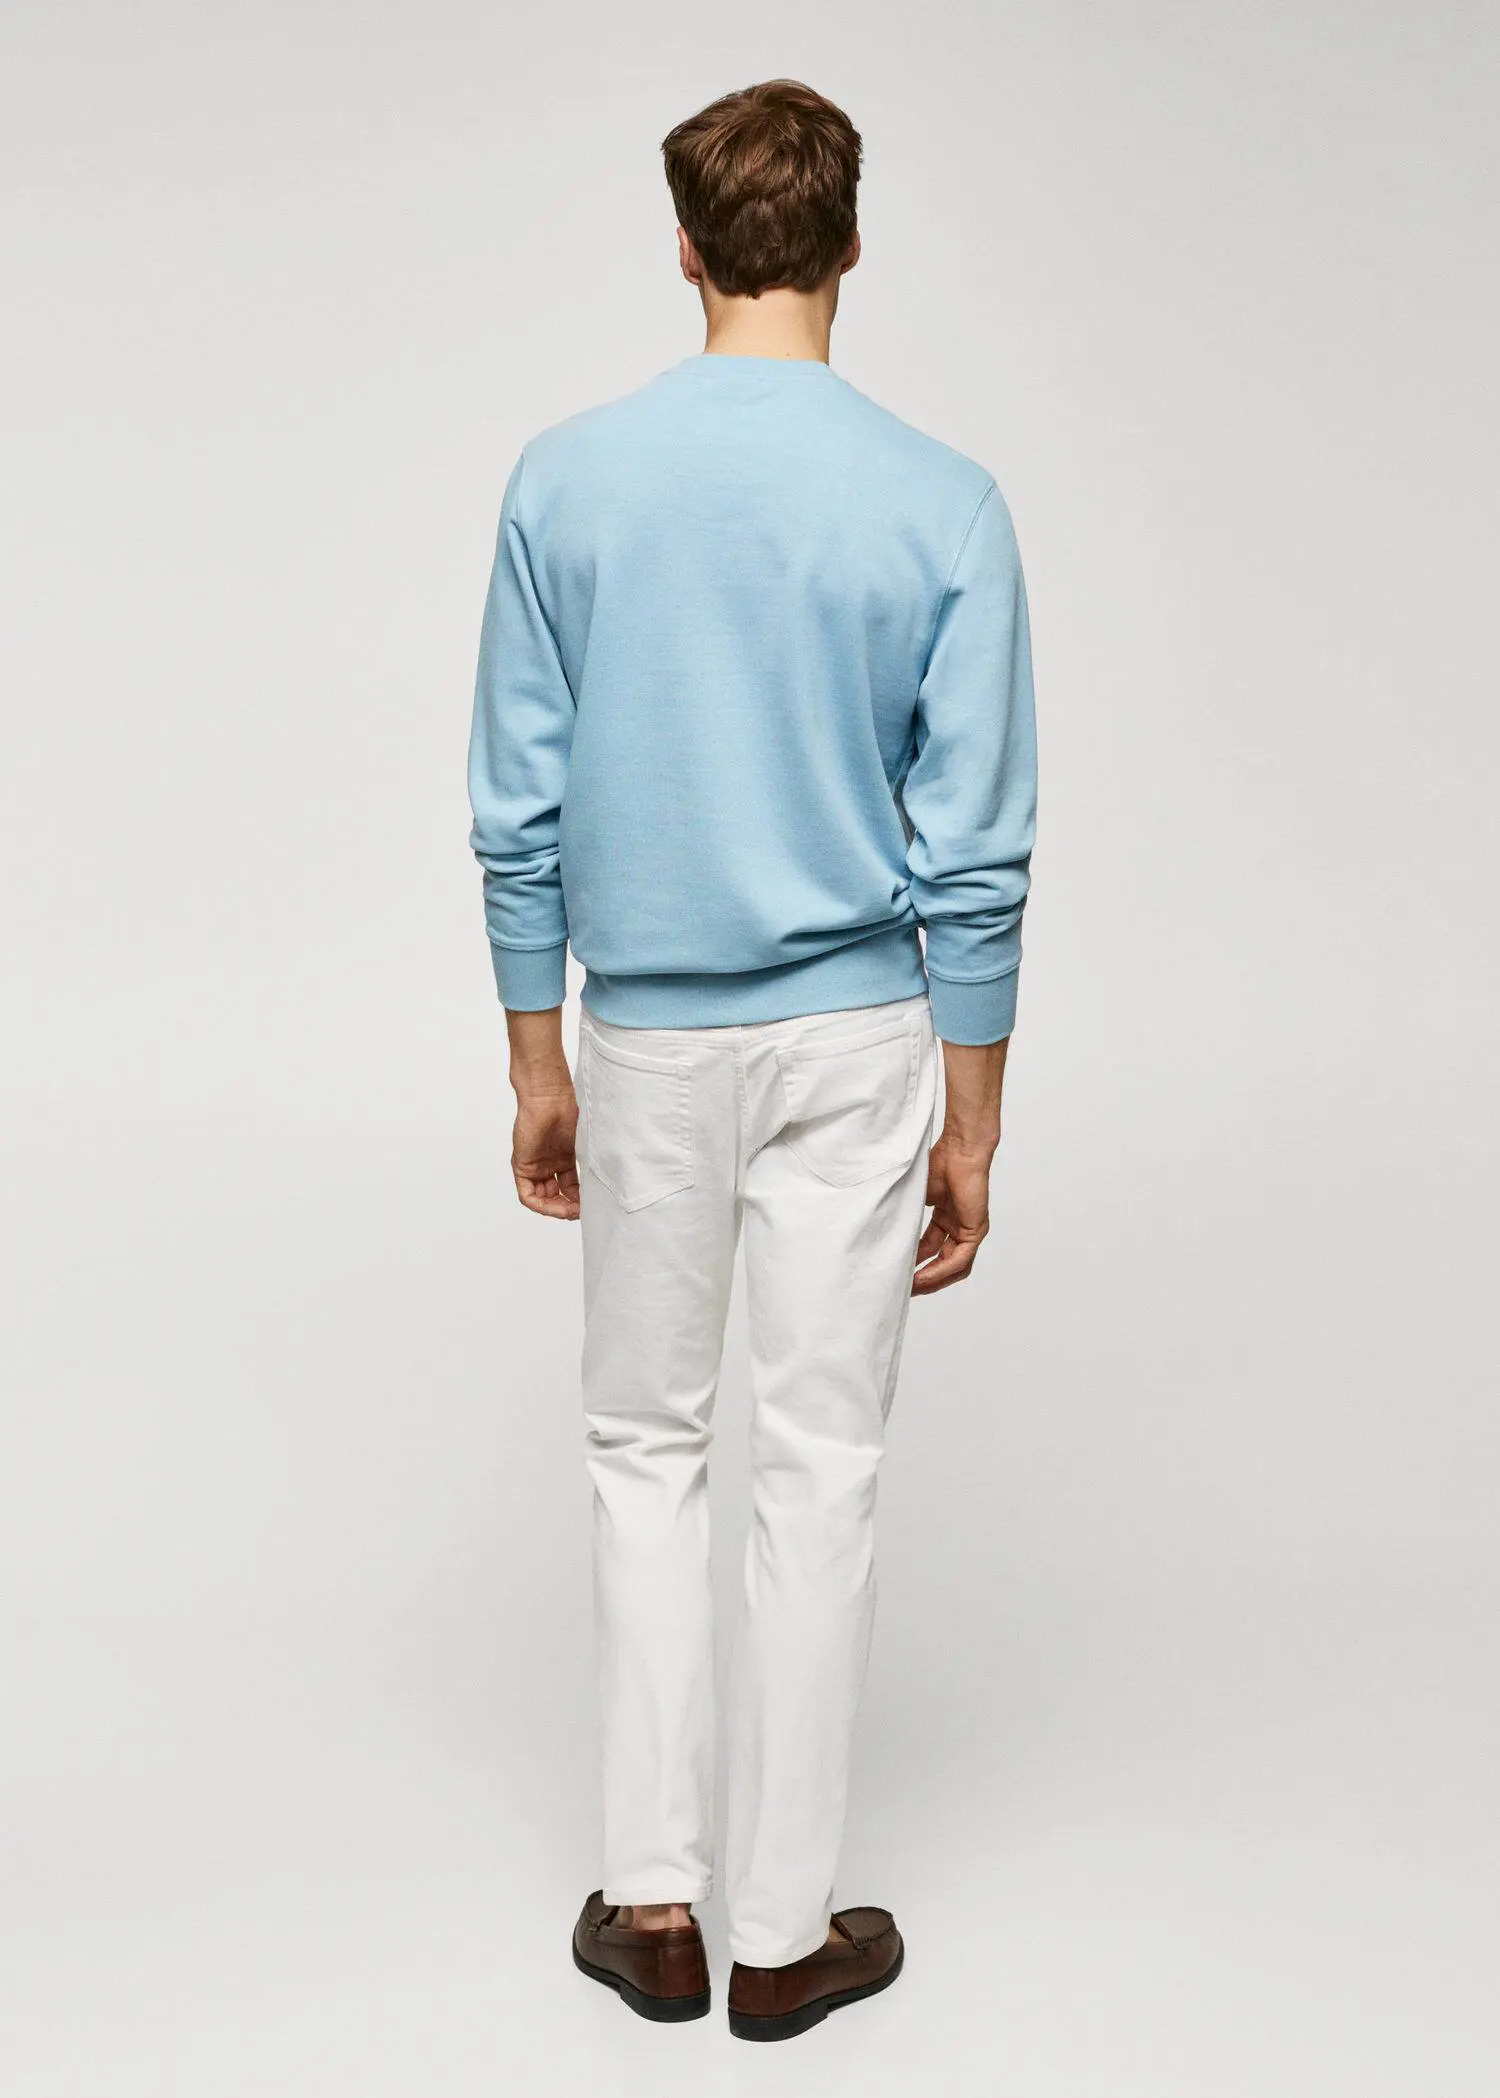 Mango 100% cotton basic sweatshirt . a man wearing a light blue sweater and white pants. 